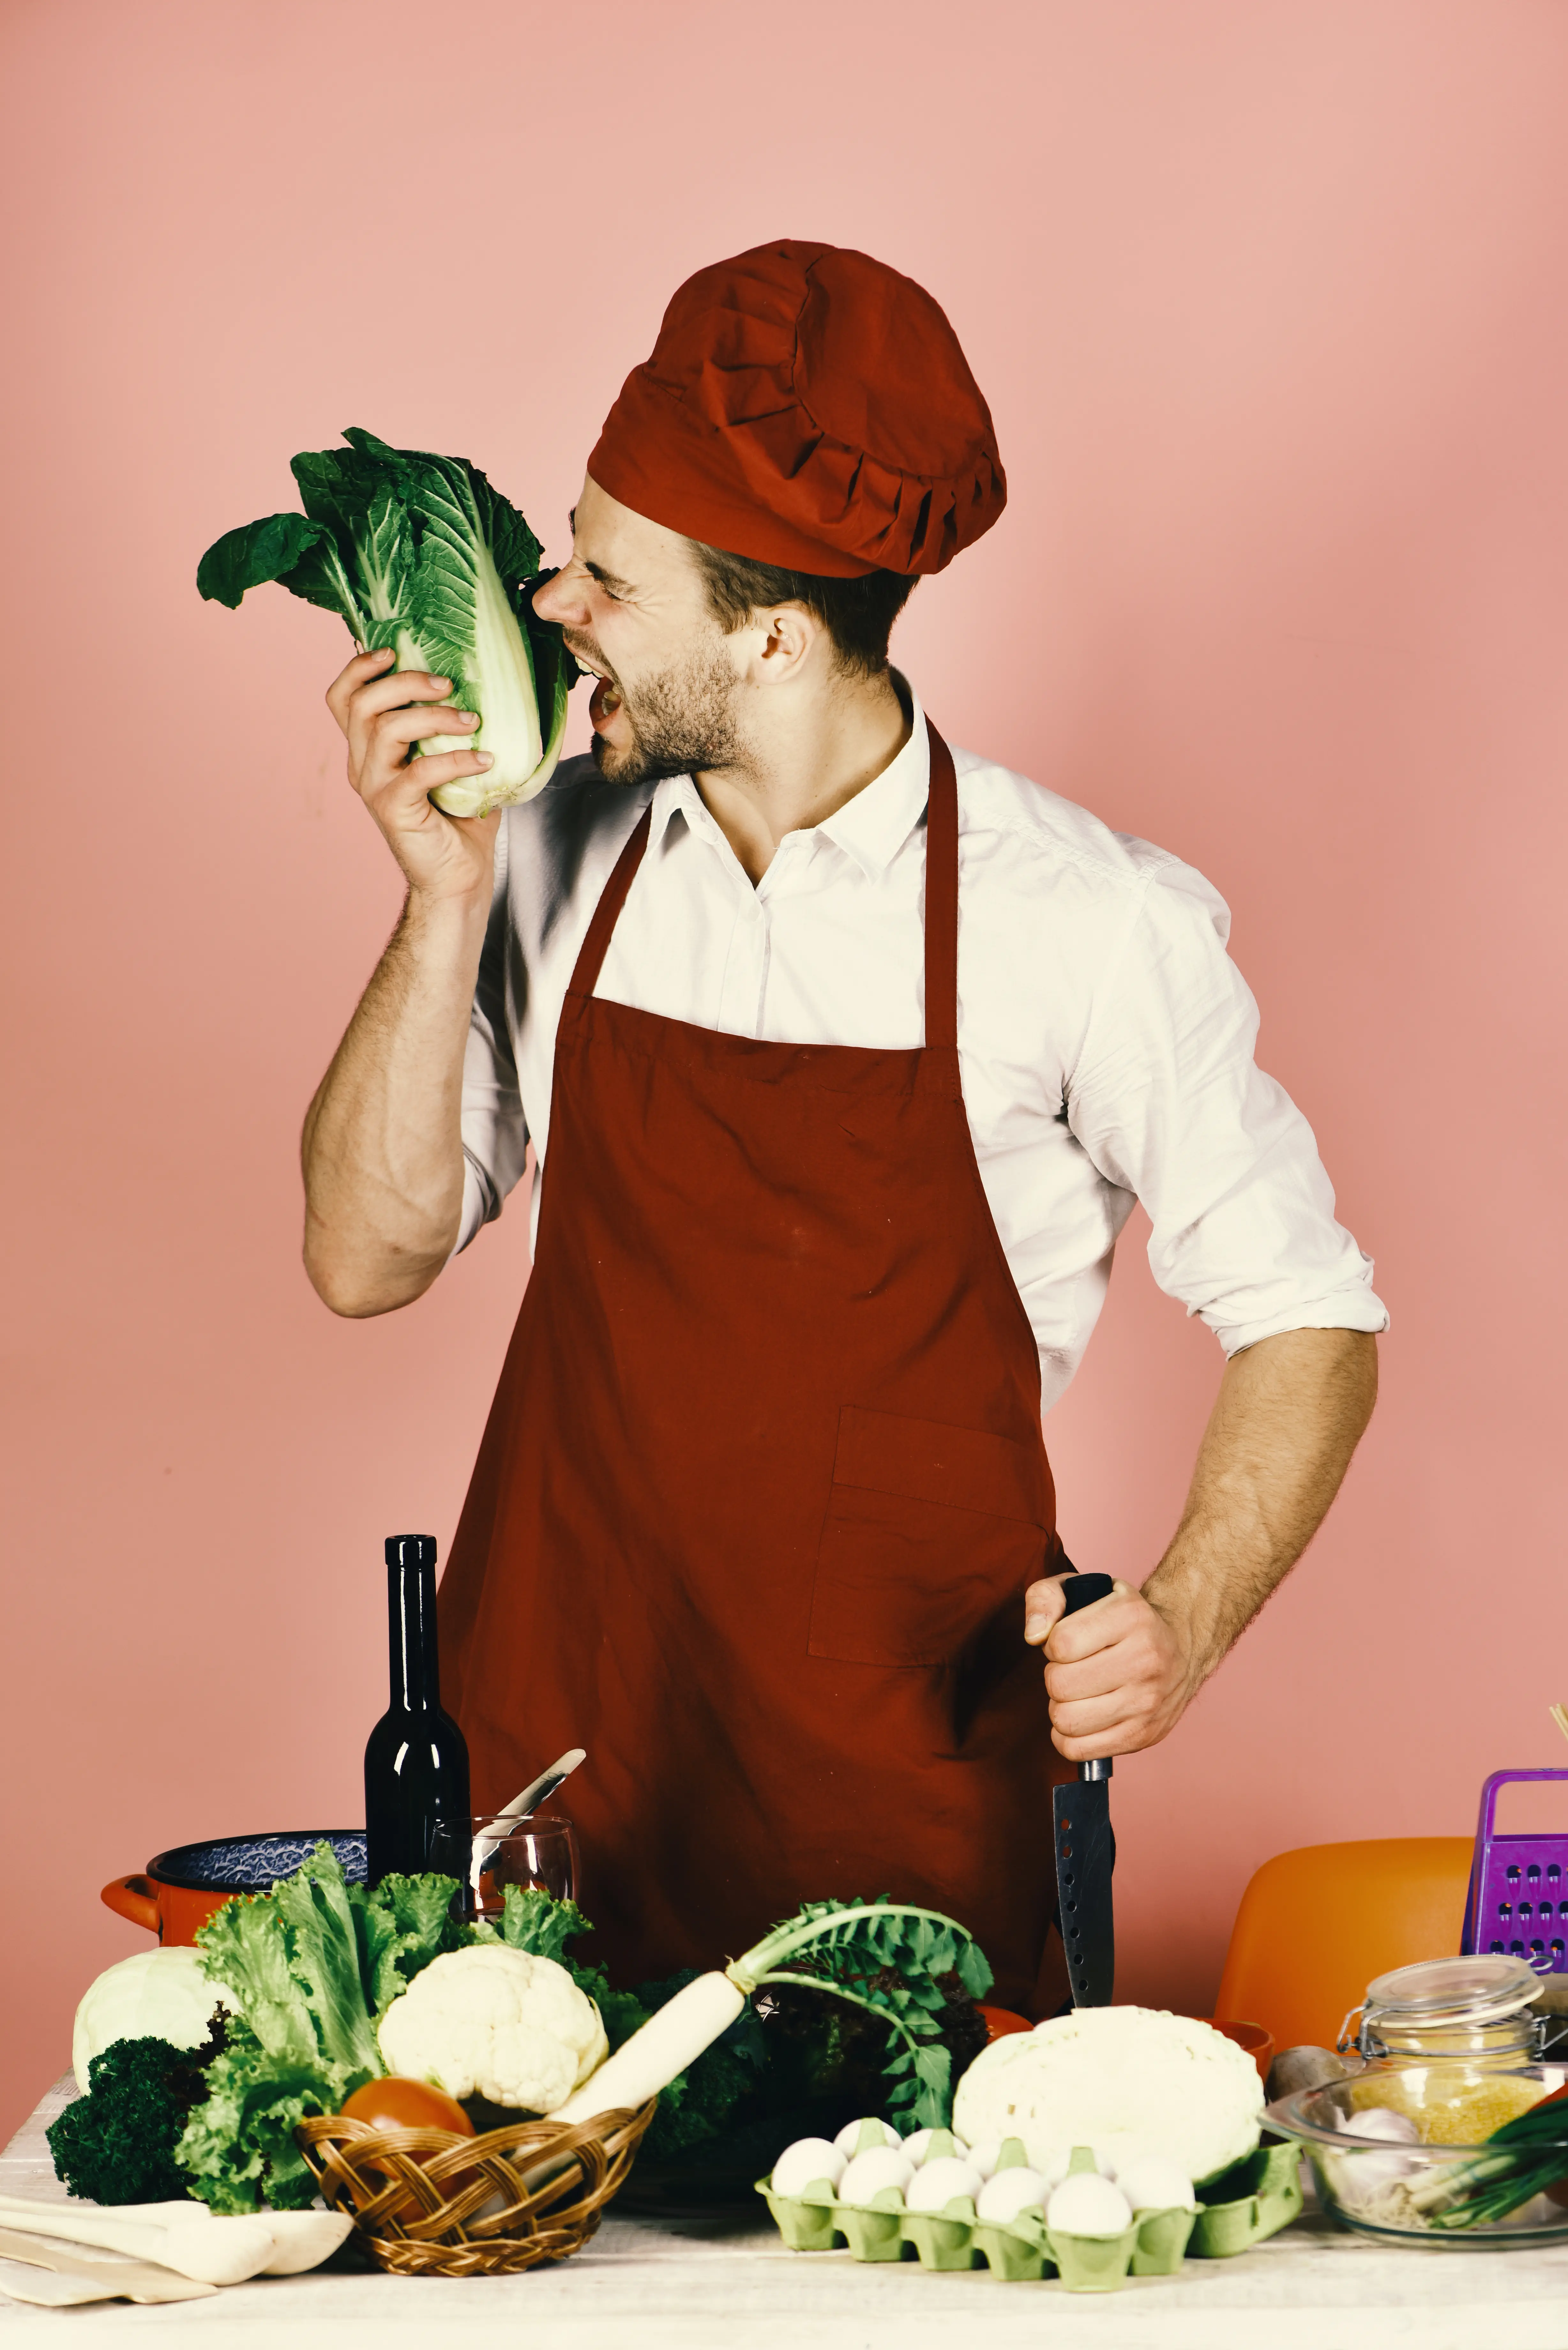 Image humoristique montrant un chef cuisinier qui croque dans des légumes